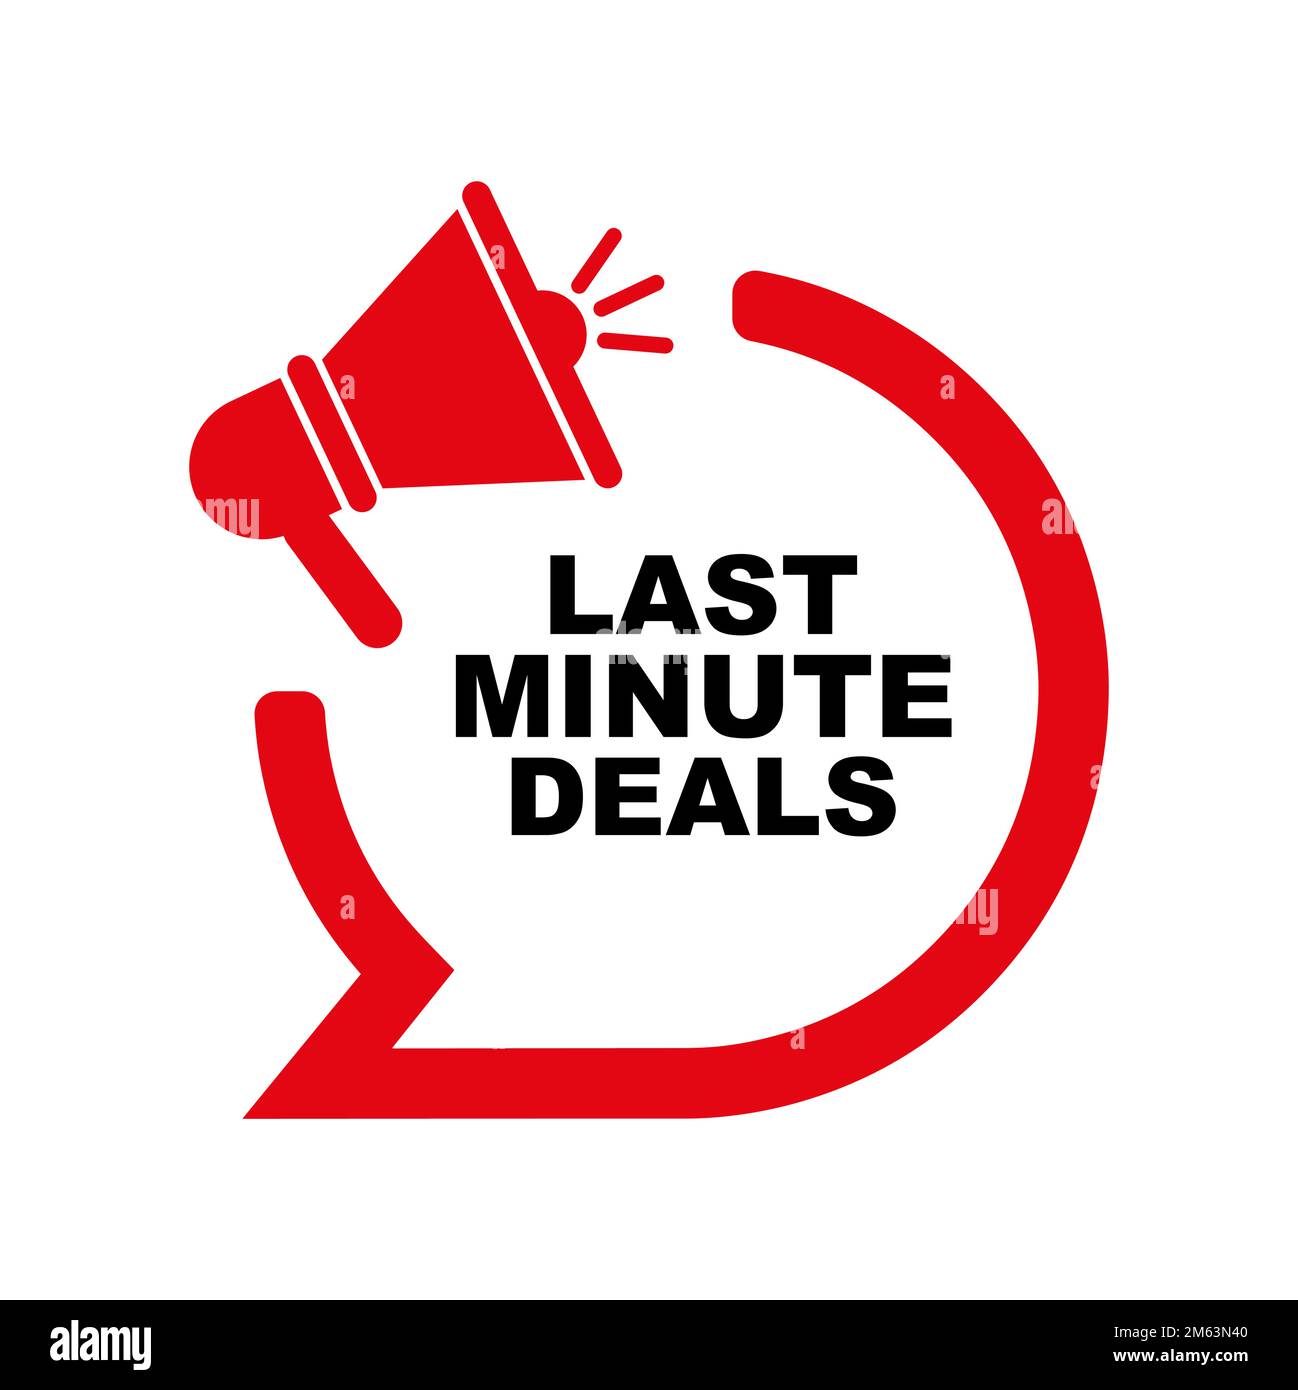 100,000 Last minute deals Vector Images